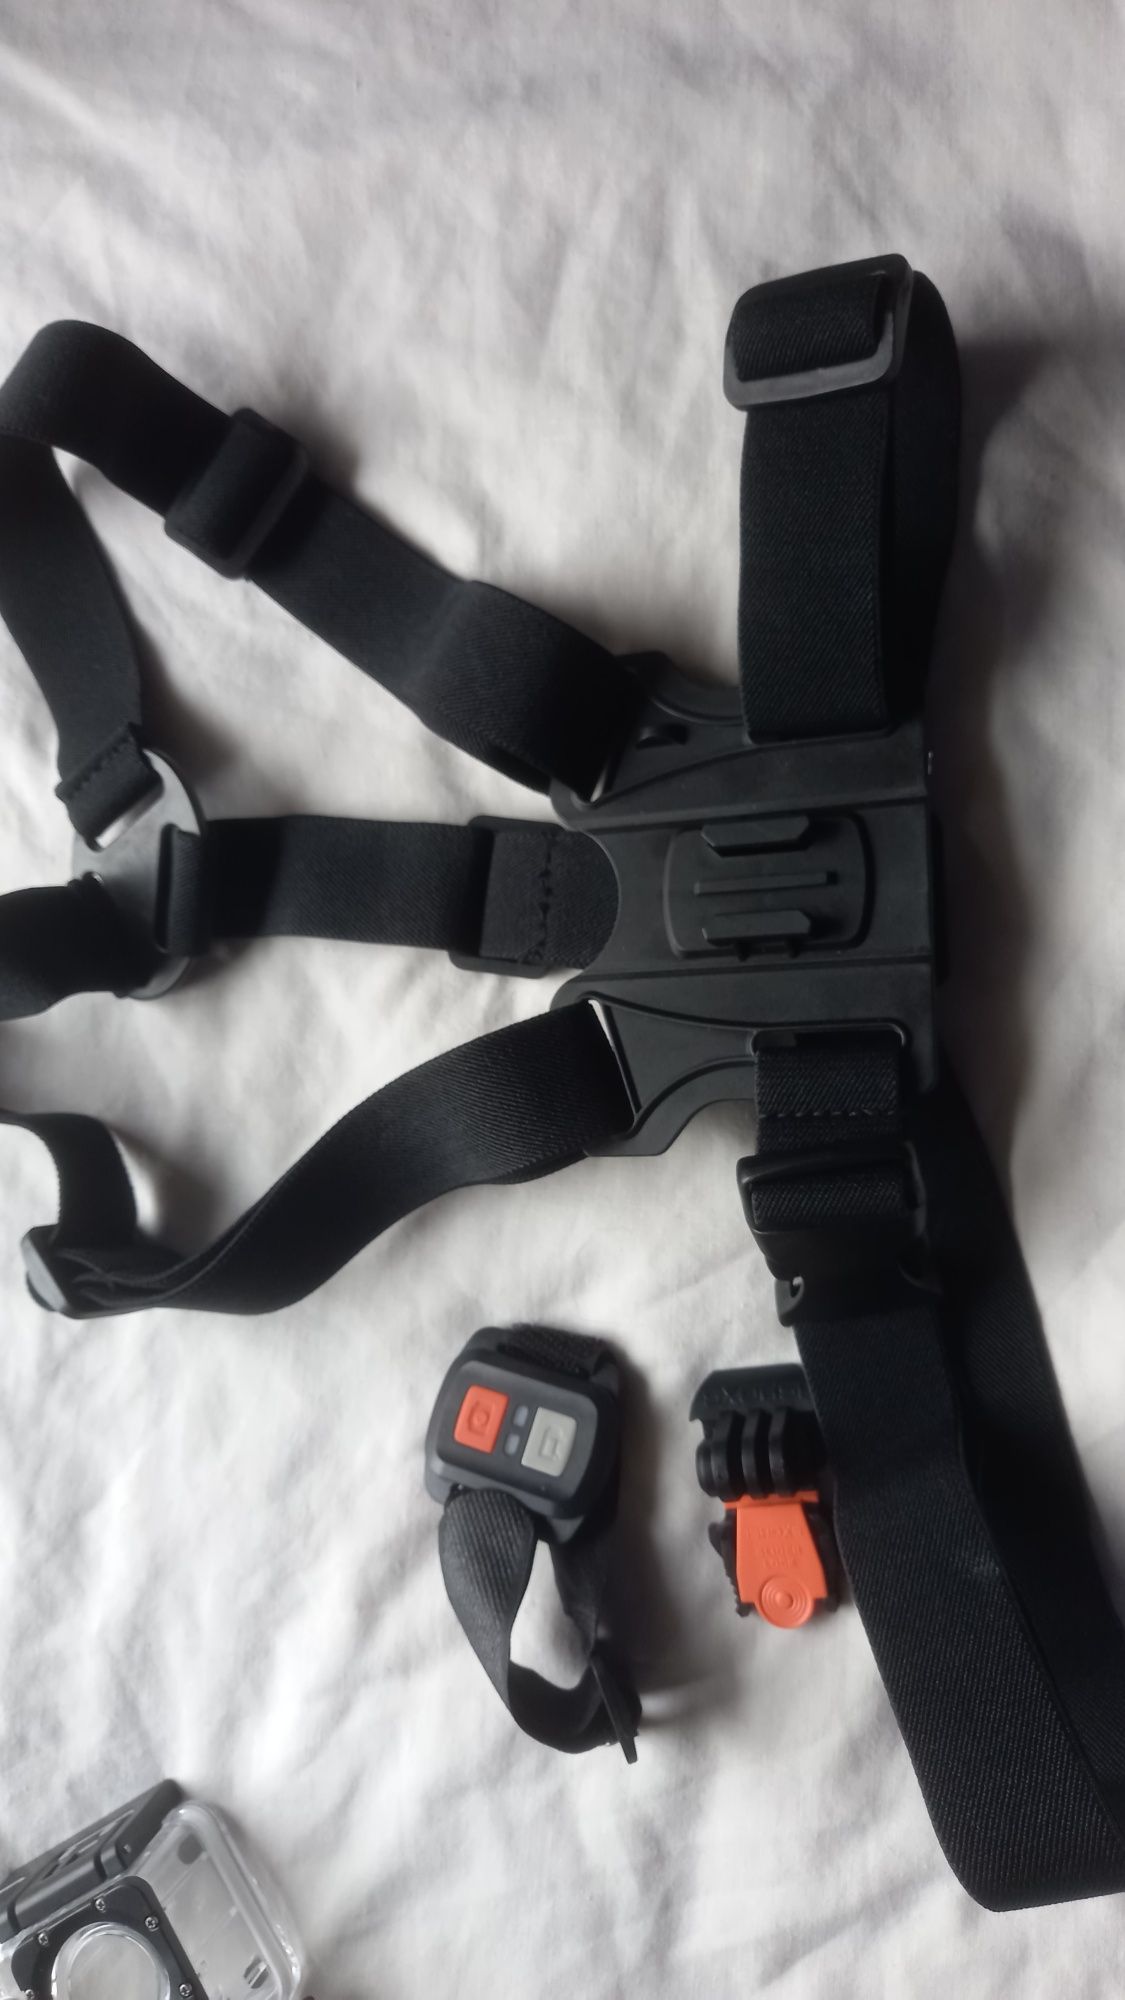 Akcesoria kamery sportowej obudowy paski uchwyty GoPro hero i inne